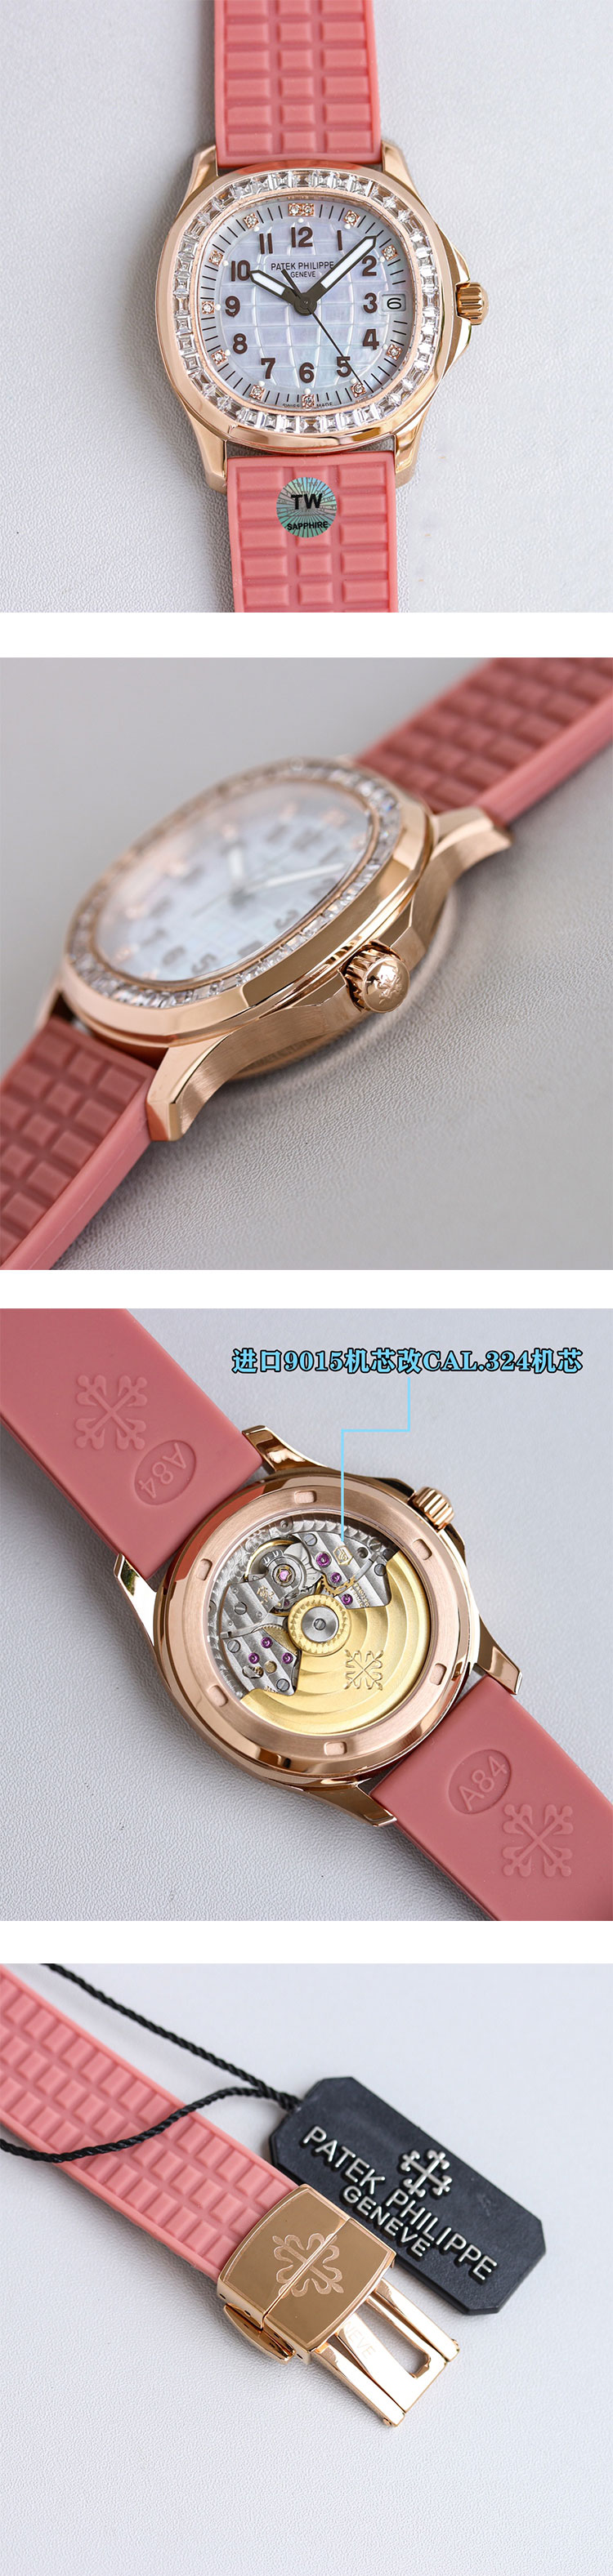 デザイン奇麗 パテック フィリップコピー 腕時計5072R-001 アクアノート ルーチェ ハイジュエリー